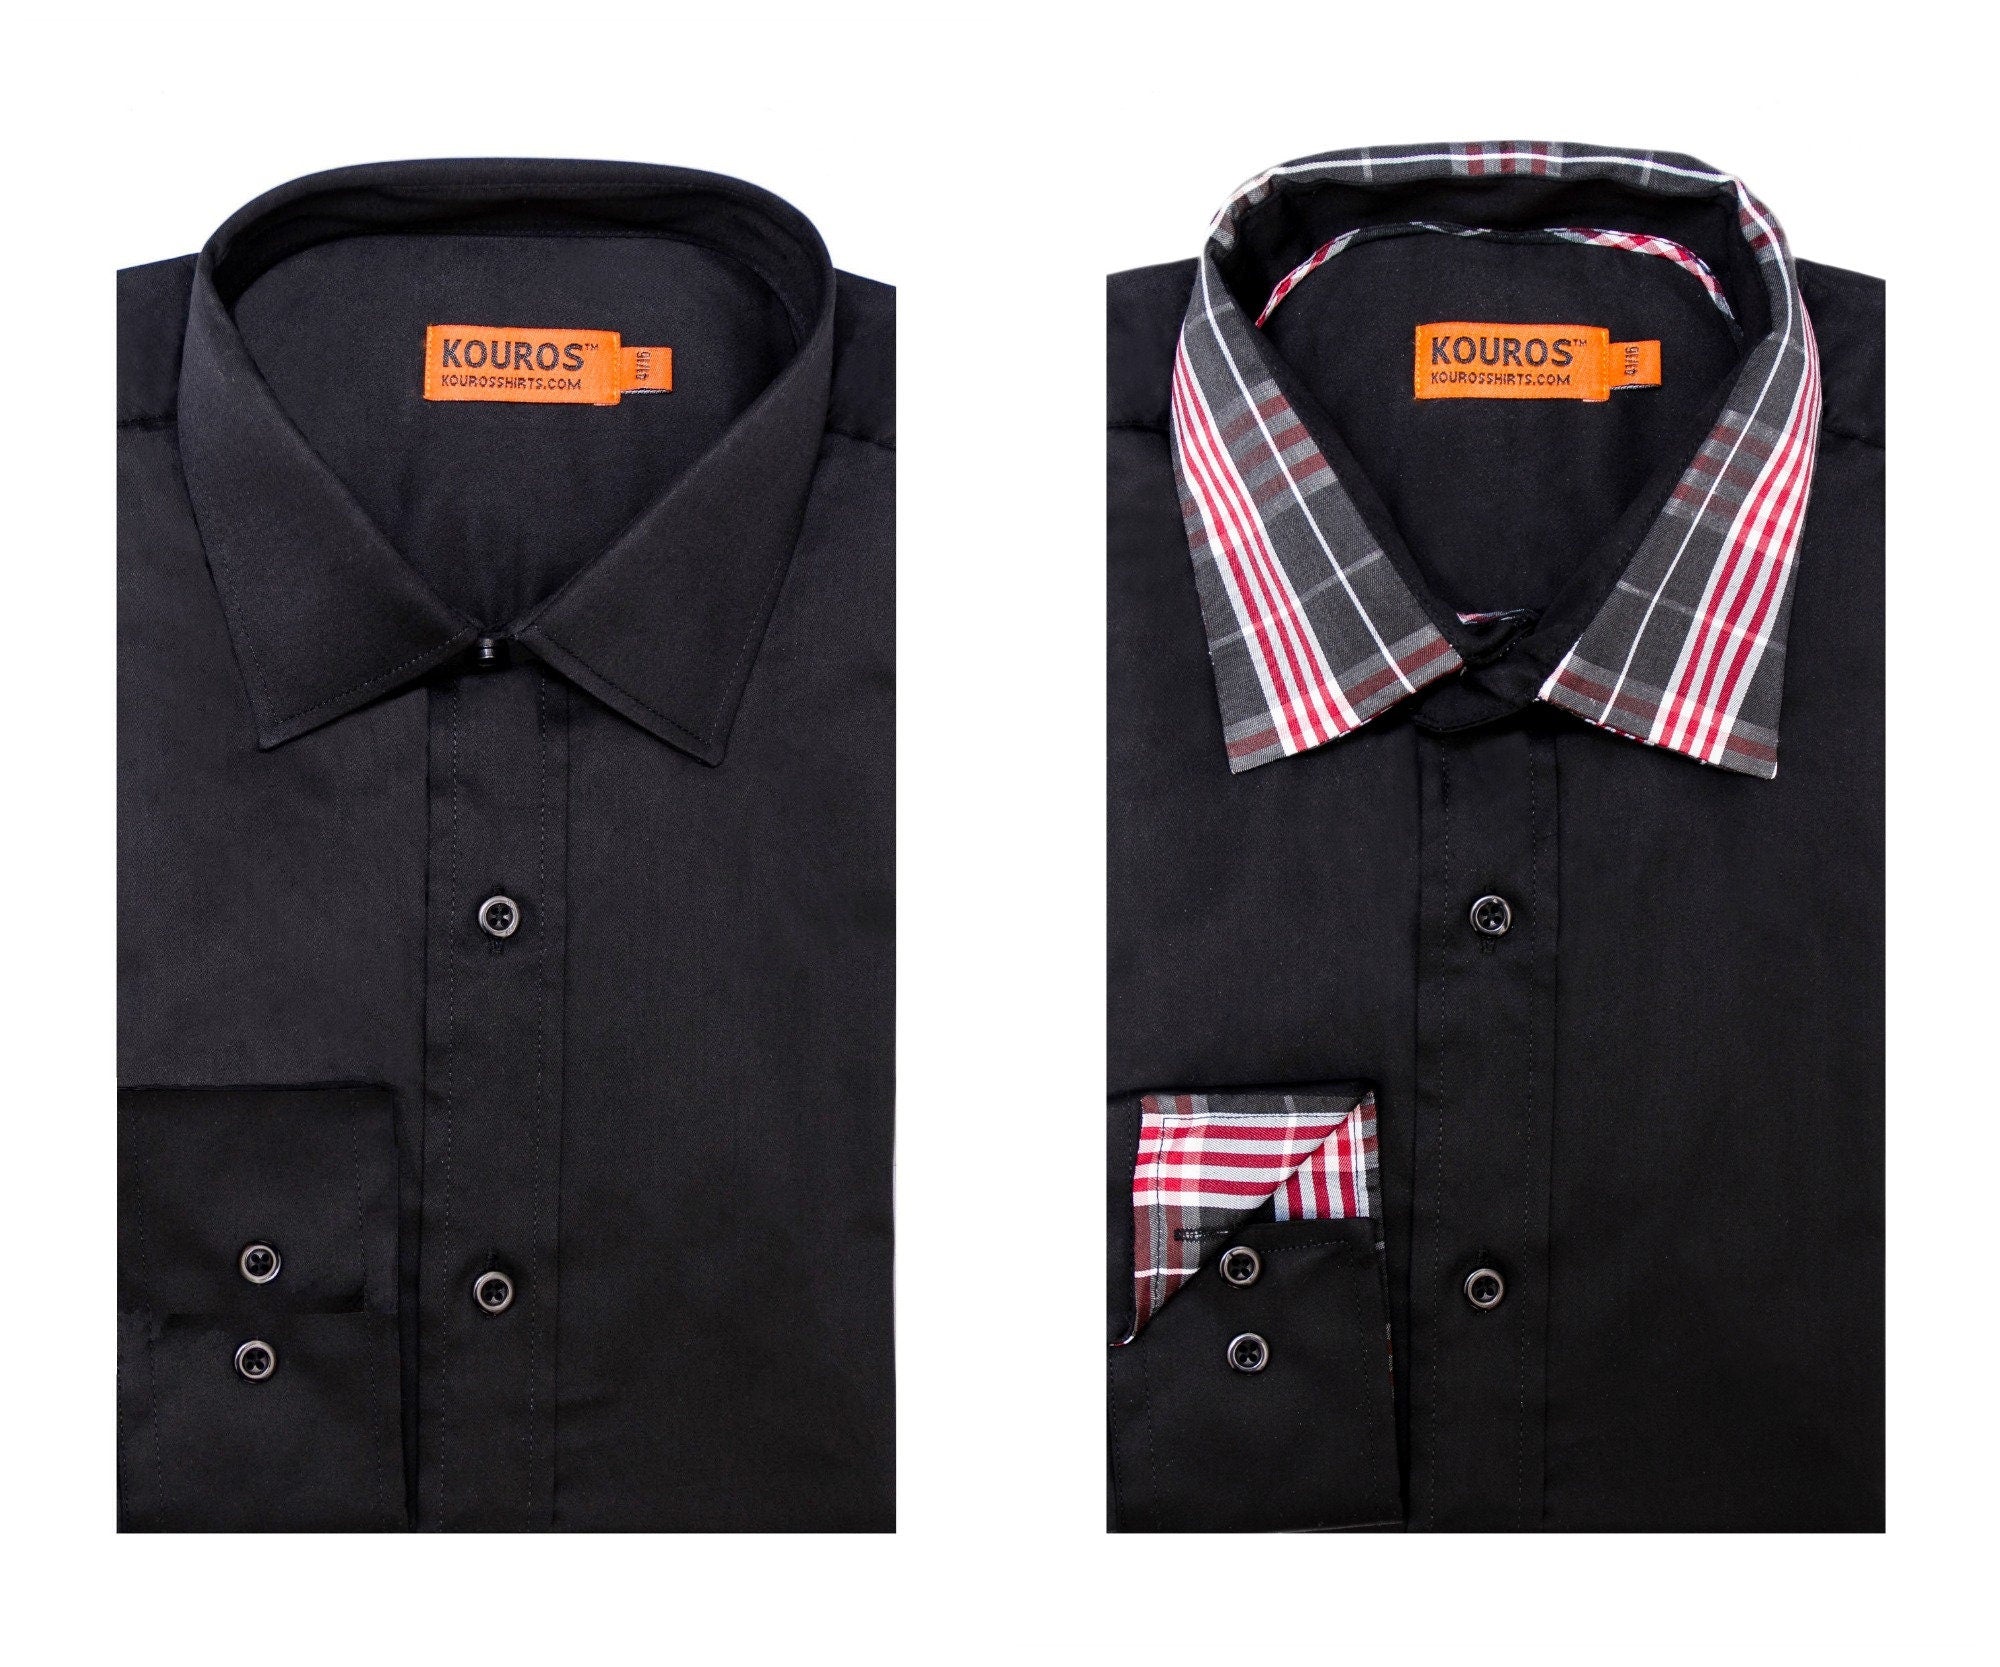 KOVROS Men's Premium Designer Dress Shirt, Black